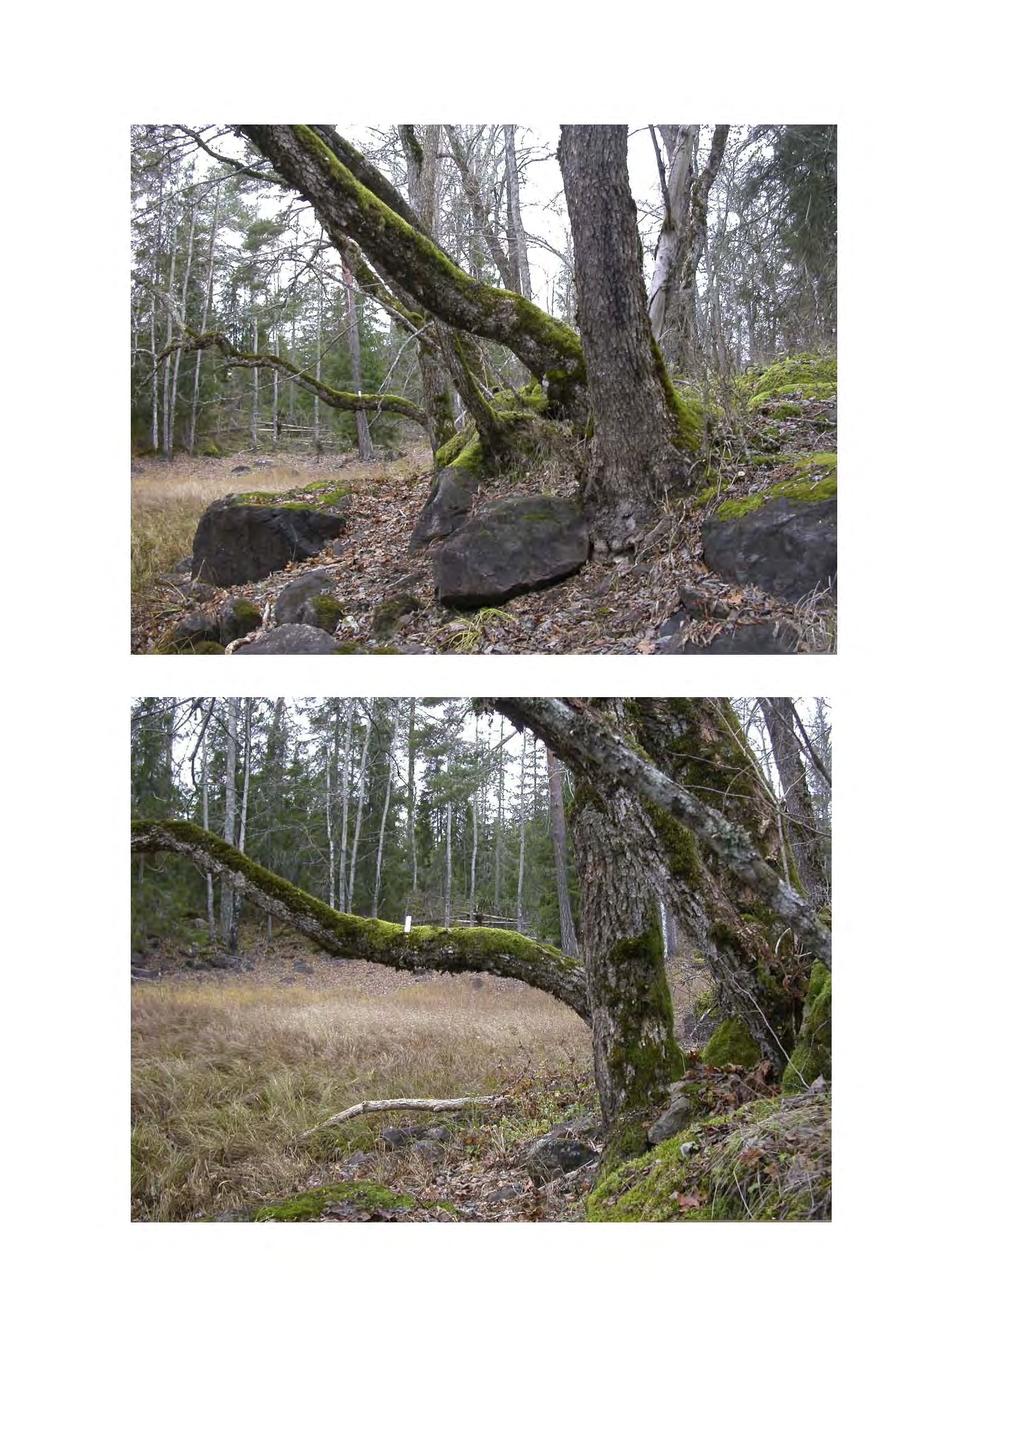 Ask A. [RT90: 6665924; 1586368] Ask, ca 30 cm i diameter, nästan horisontell. Trädet i askbukett med 4 stammar (träd 63-66 i Weibull 2003).